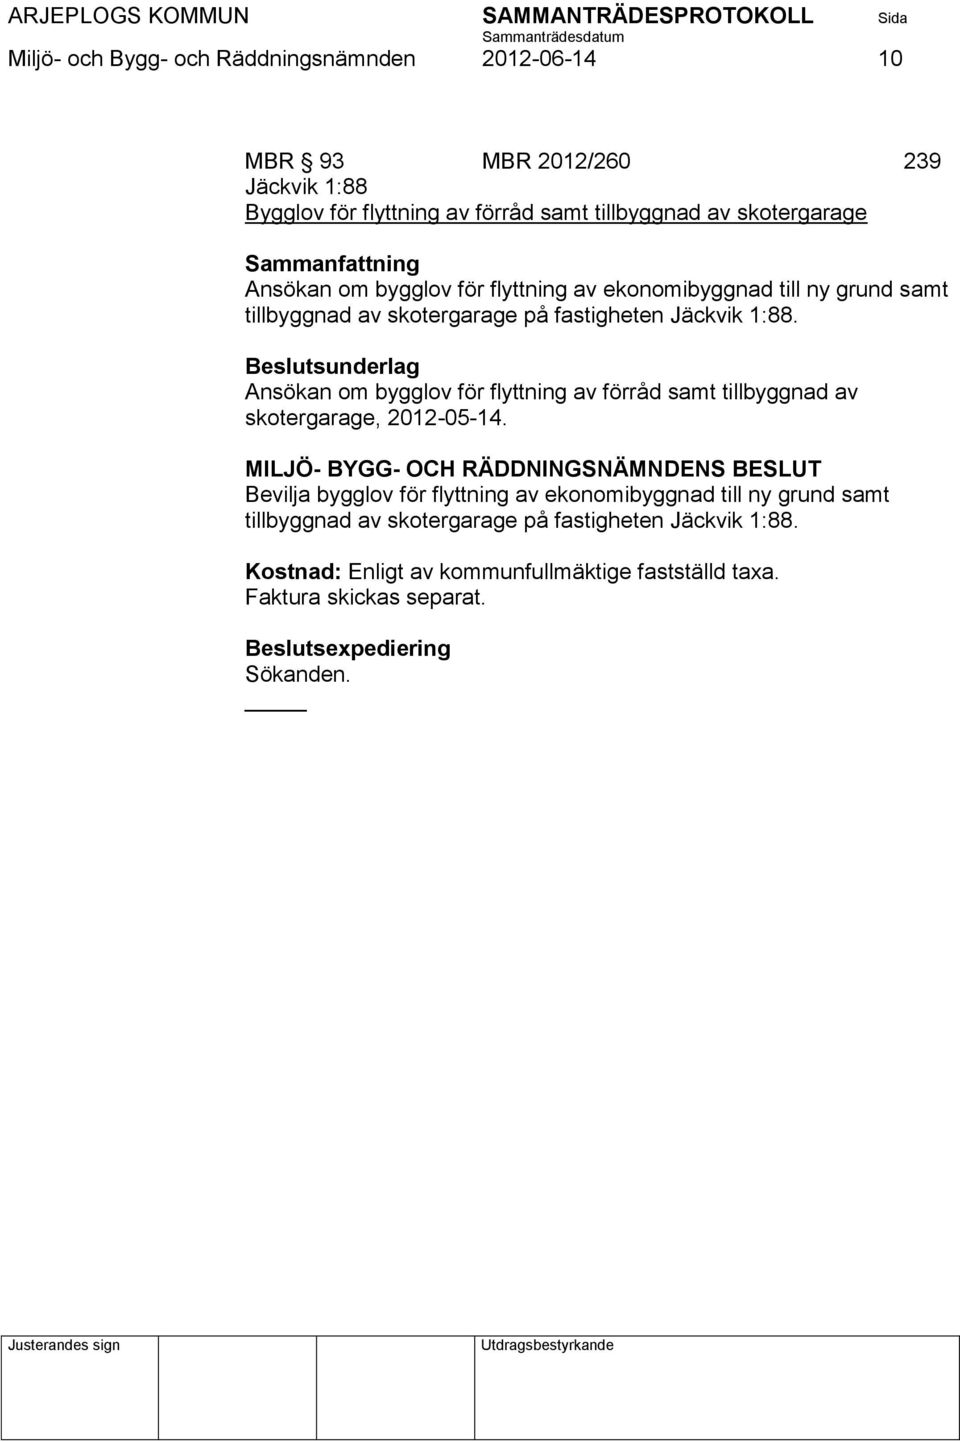 Ansökan om bygglov för flyttning av förråd samt tillbyggnad av skotergarage, 2012-05-14.